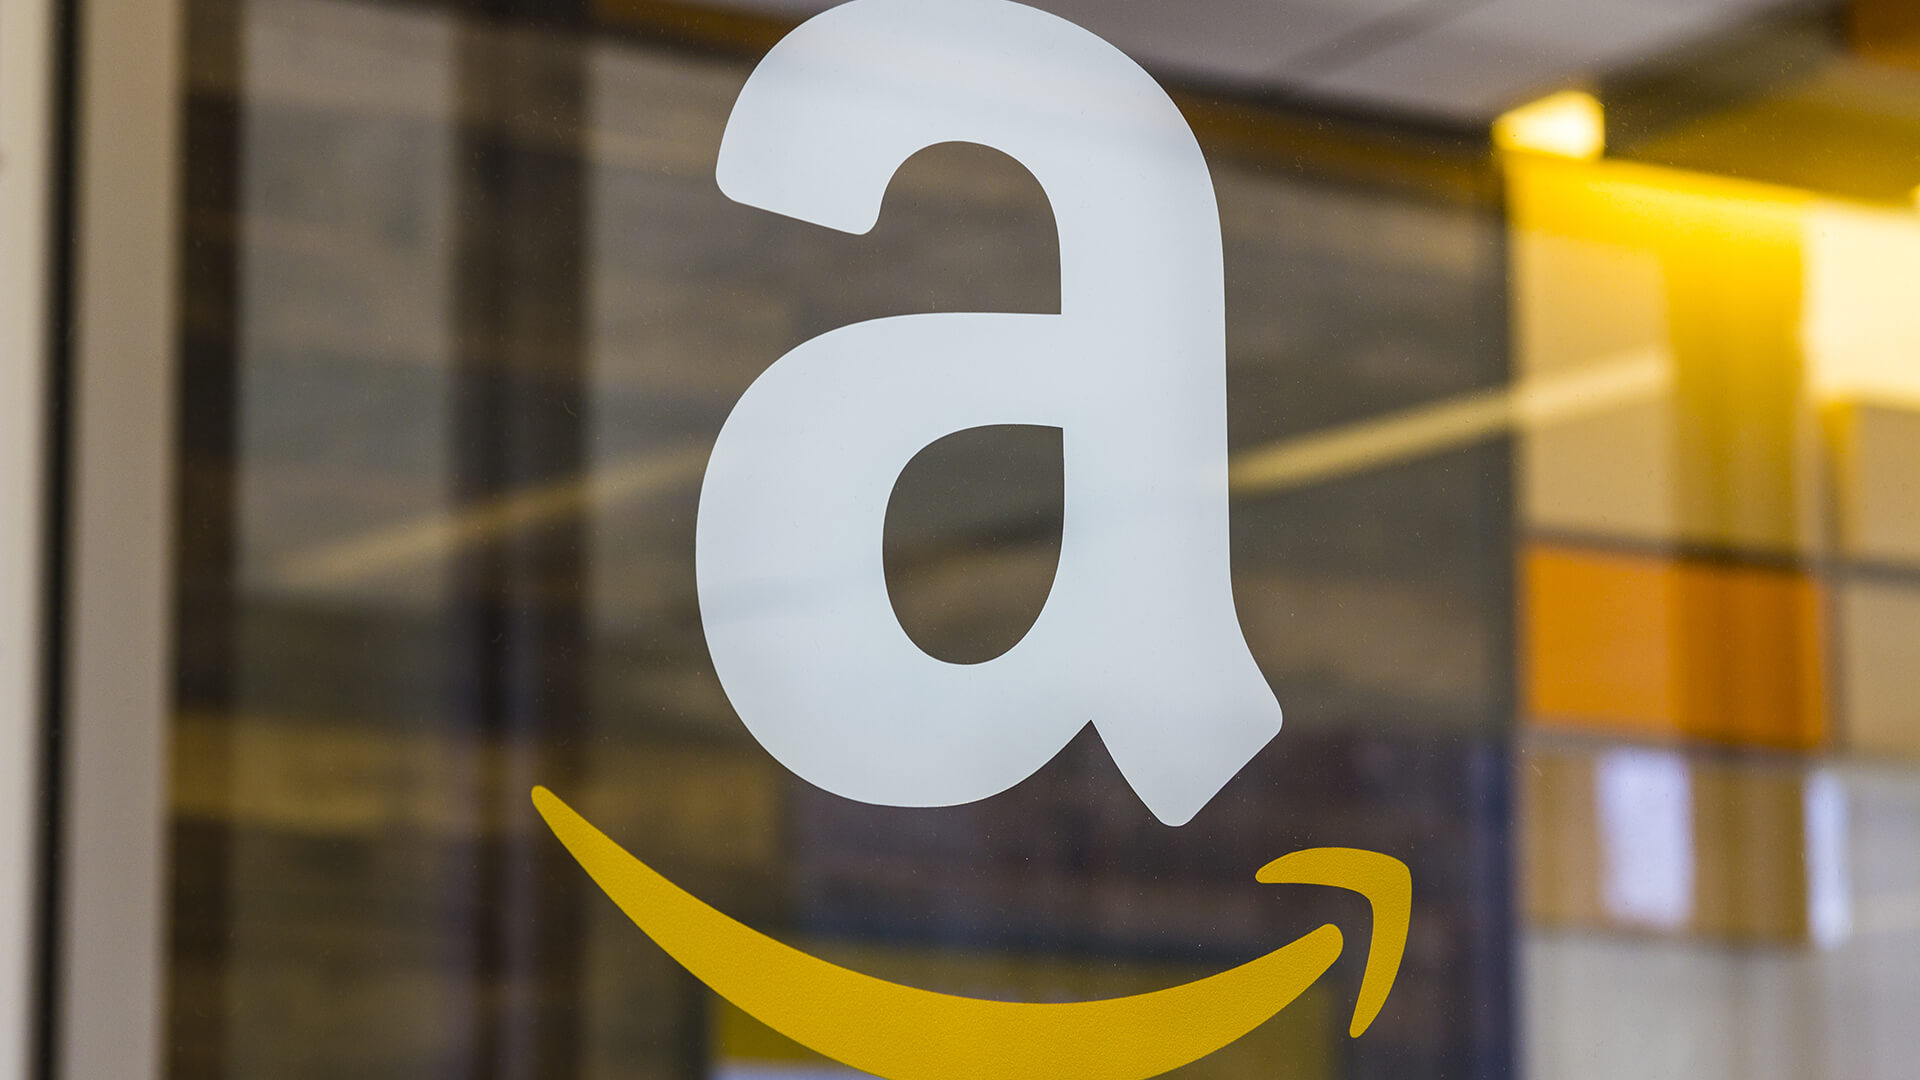 Los ingresos publicitarios de Amazon en el tercer trimestre superan los mil millones de dólares, aproximadamente el doble que a principios de 2016